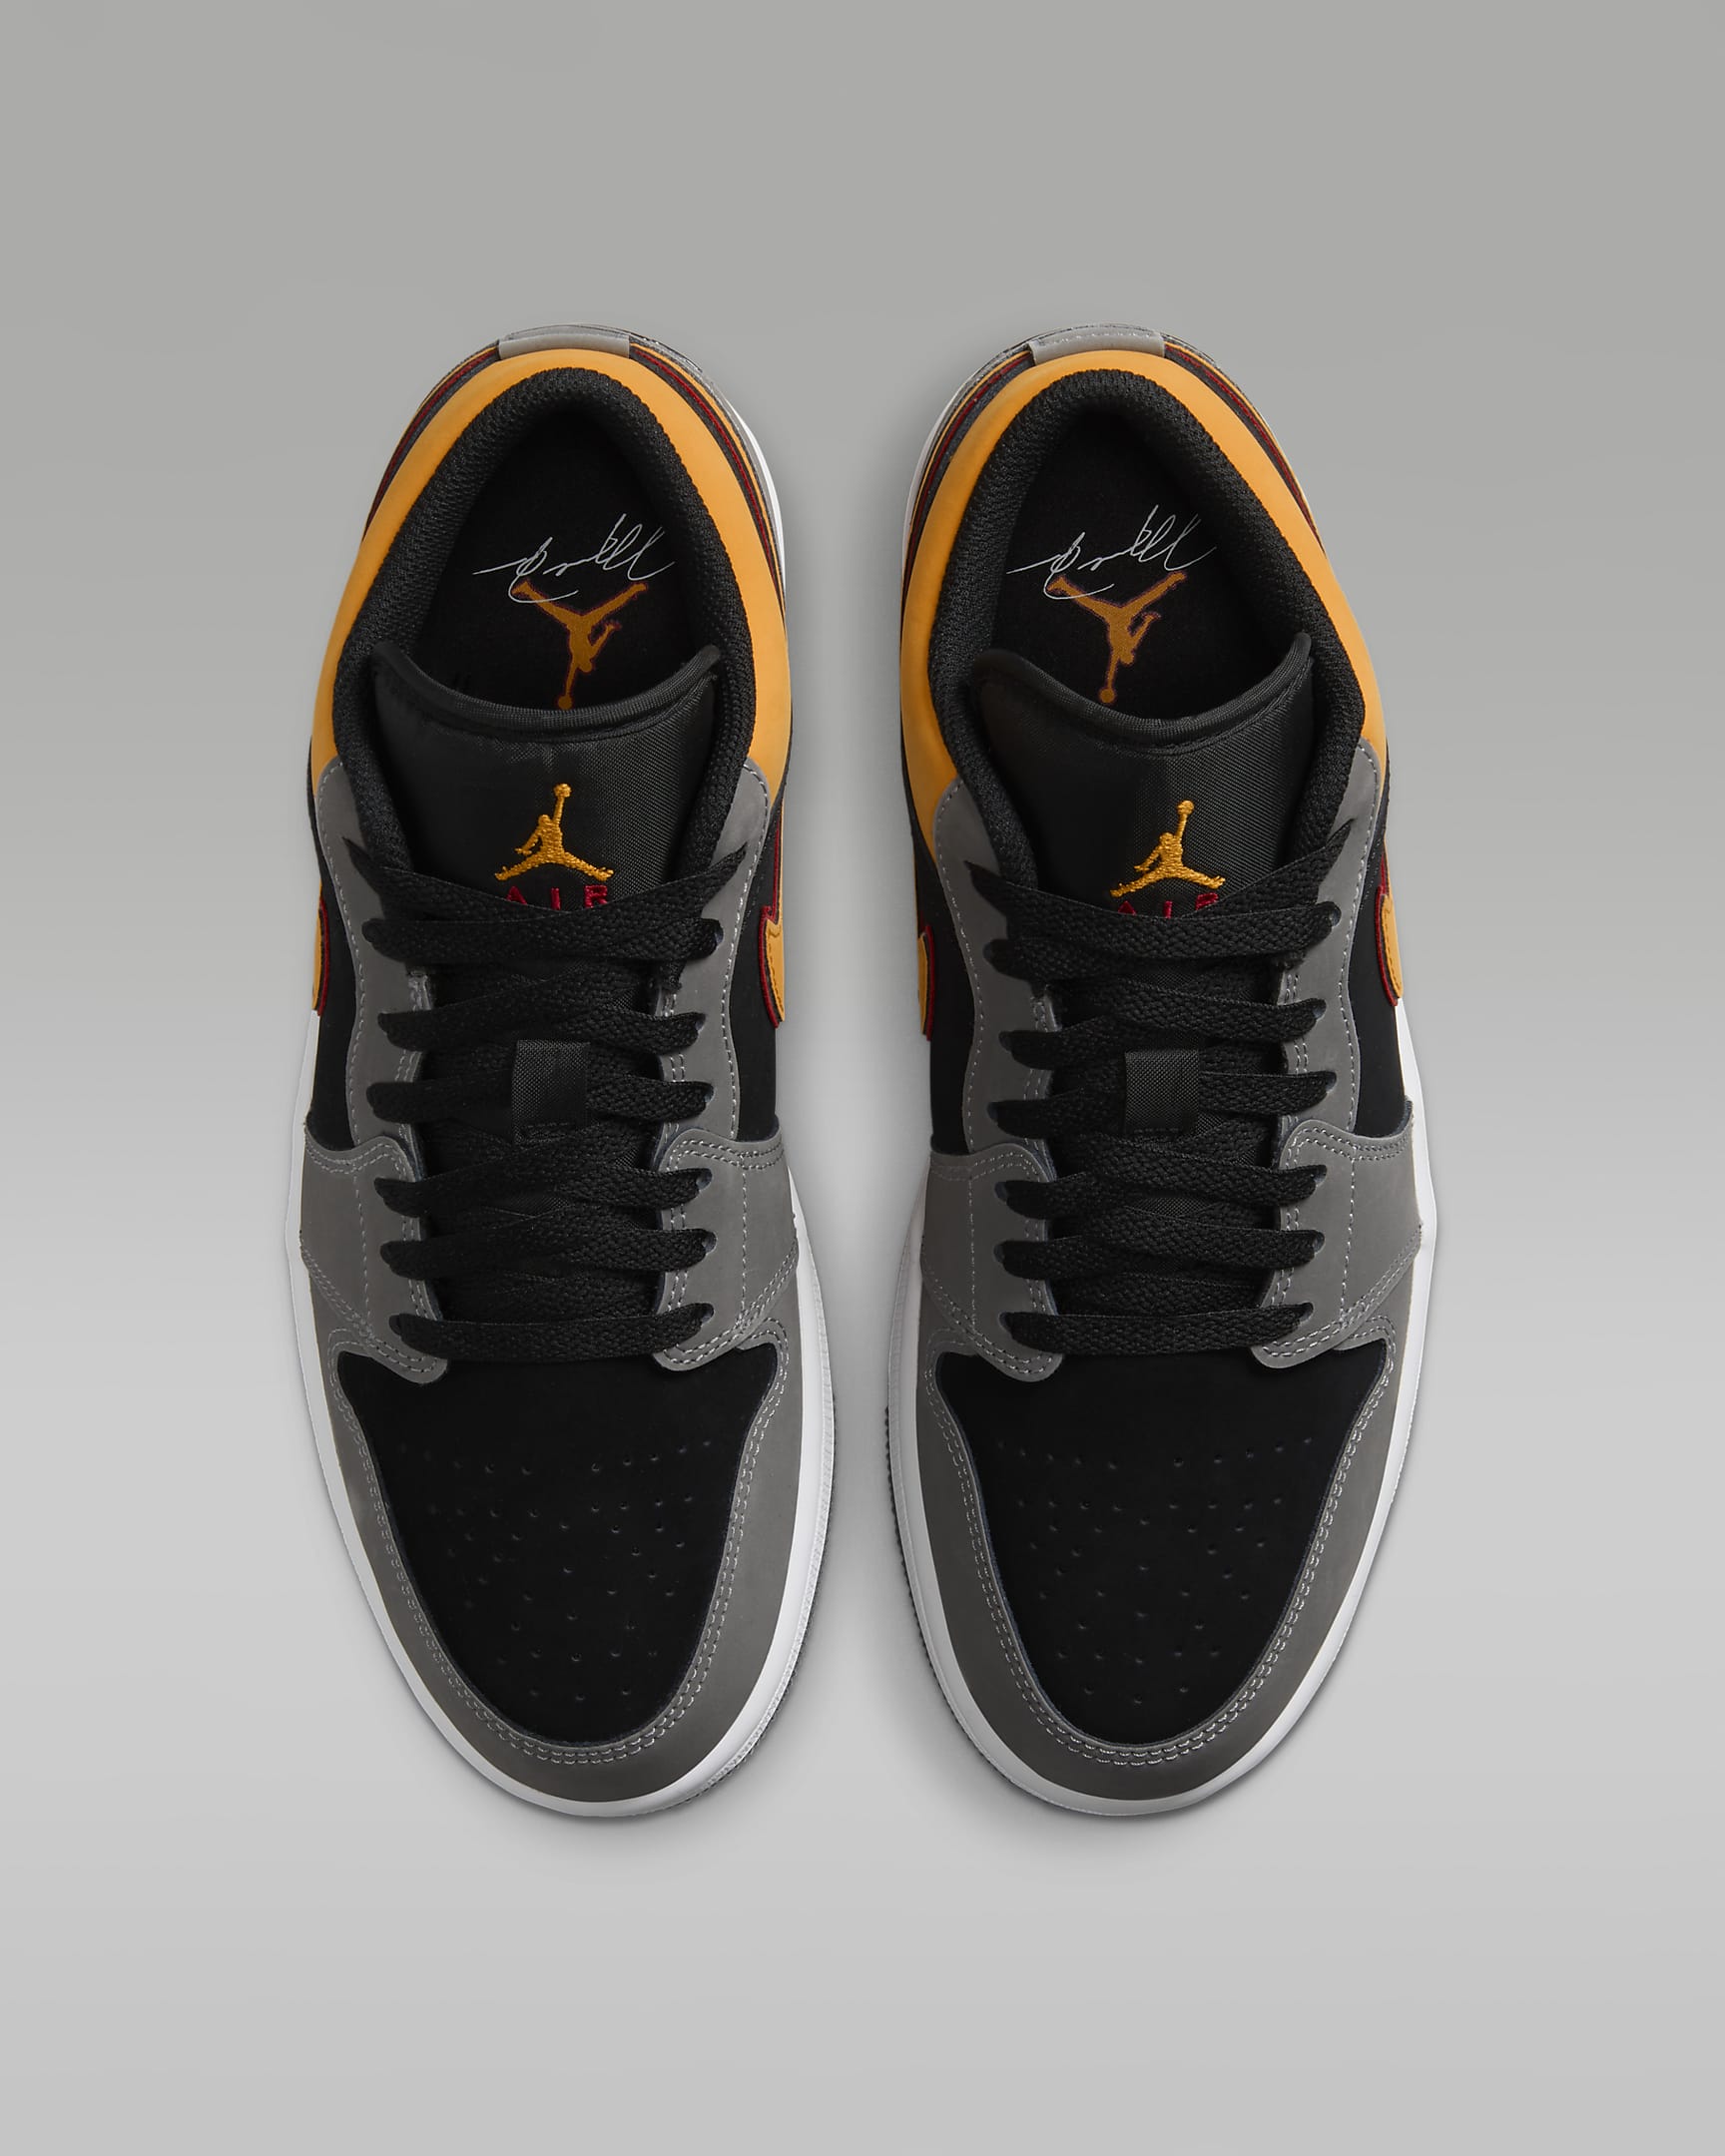 Unveiling the Hottest Air Jordan 1 Low SE Men’s Shoes – A Sneakerhead’s Dream Come True!